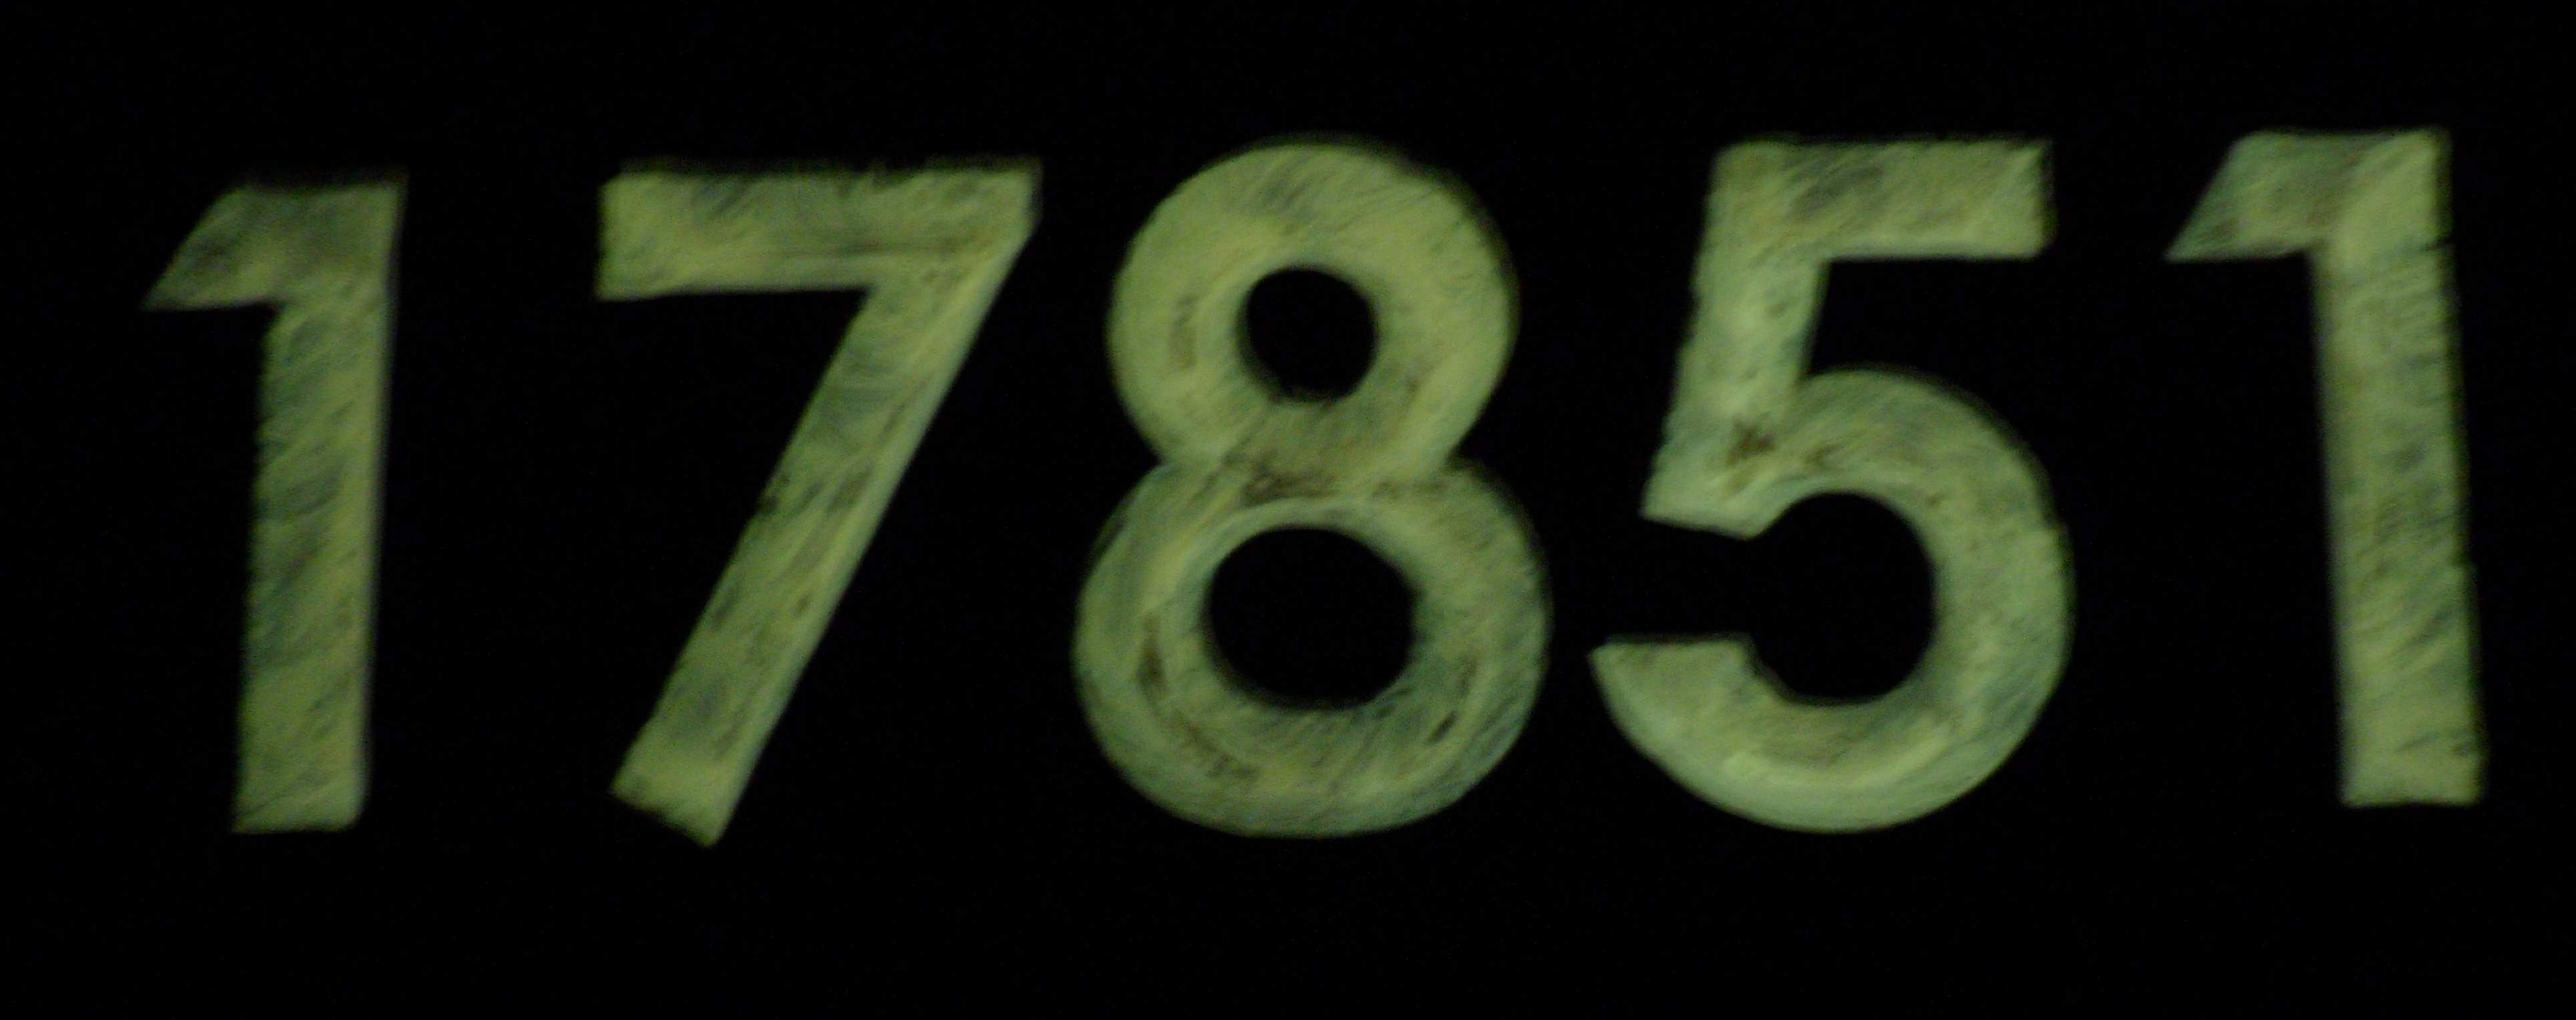 Cette plaque d'adresse les chiffres ont reçu une peinture fluorescente et ensuite le verni, donc les chiffres réfléchis dans le noir. 